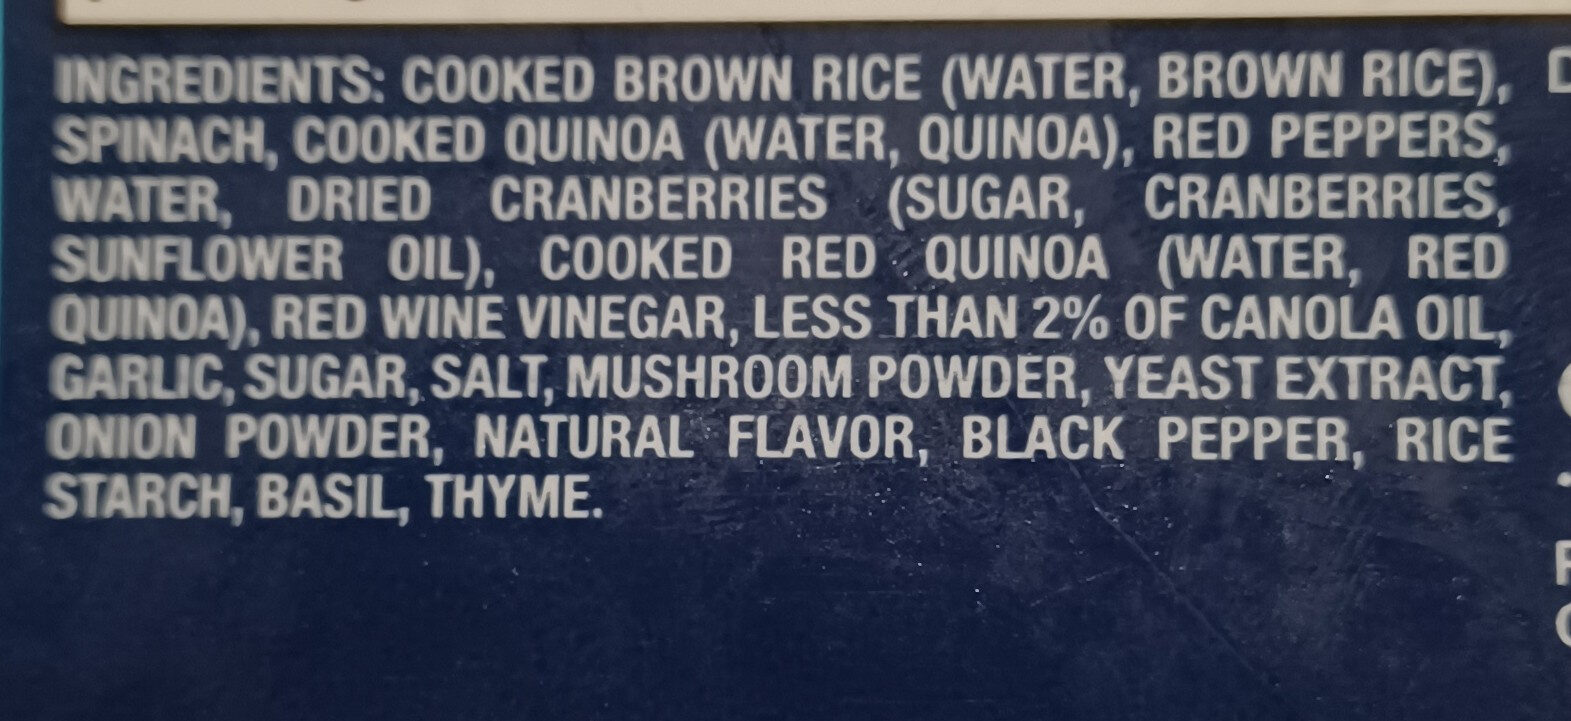 Bird's eye superfood blends quinoa & spinach - Ingredients